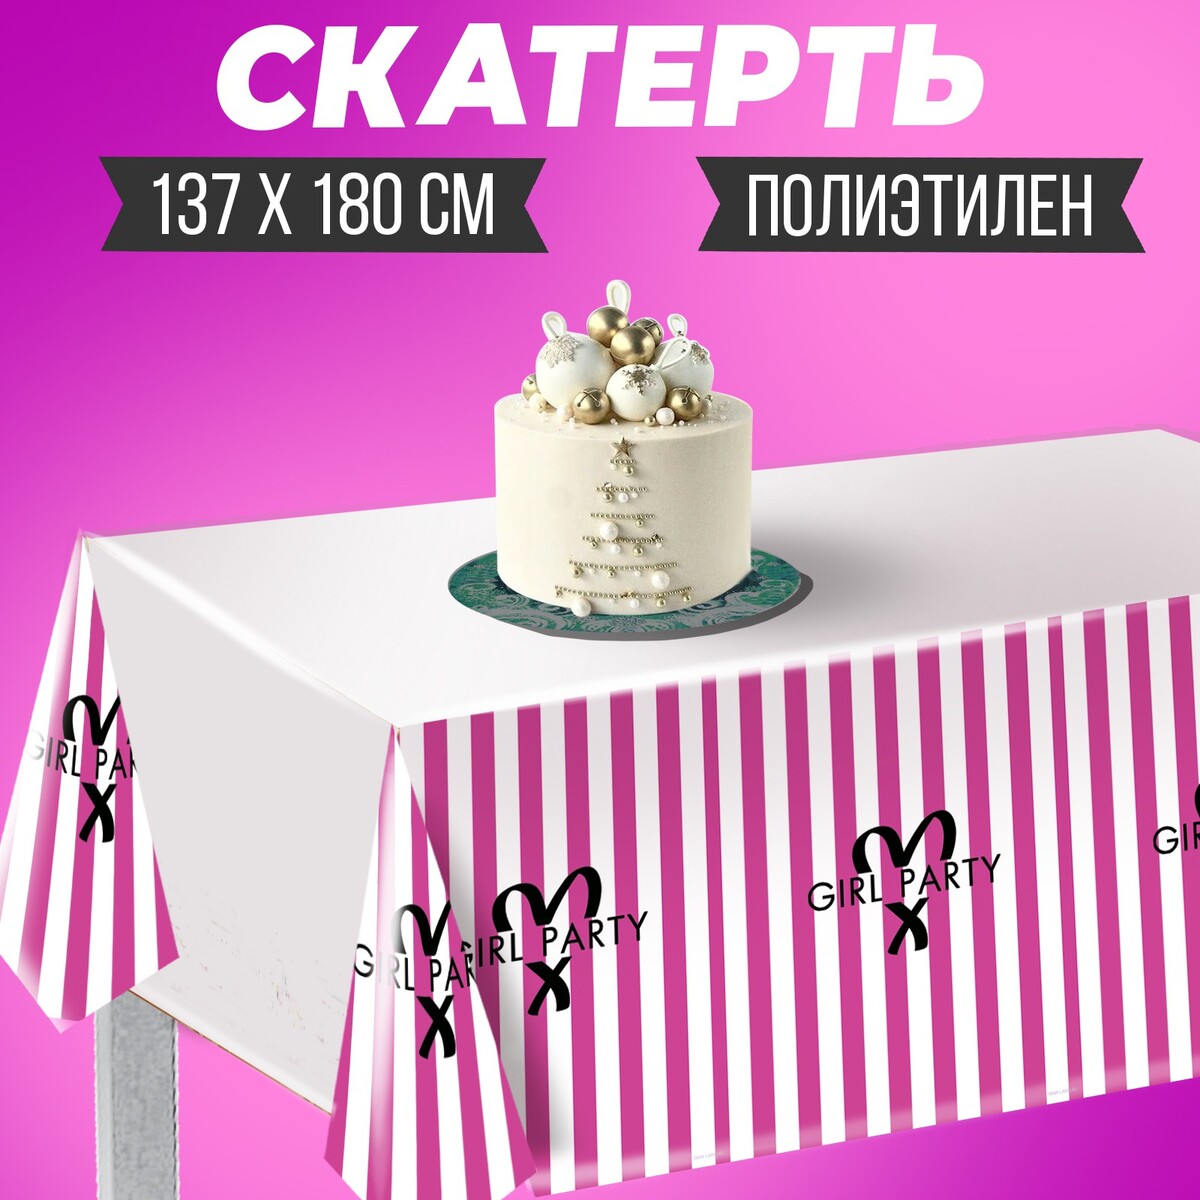 Скатерть girl party, 137 × 180 см, полиэтилен бальзам детский girl kitty